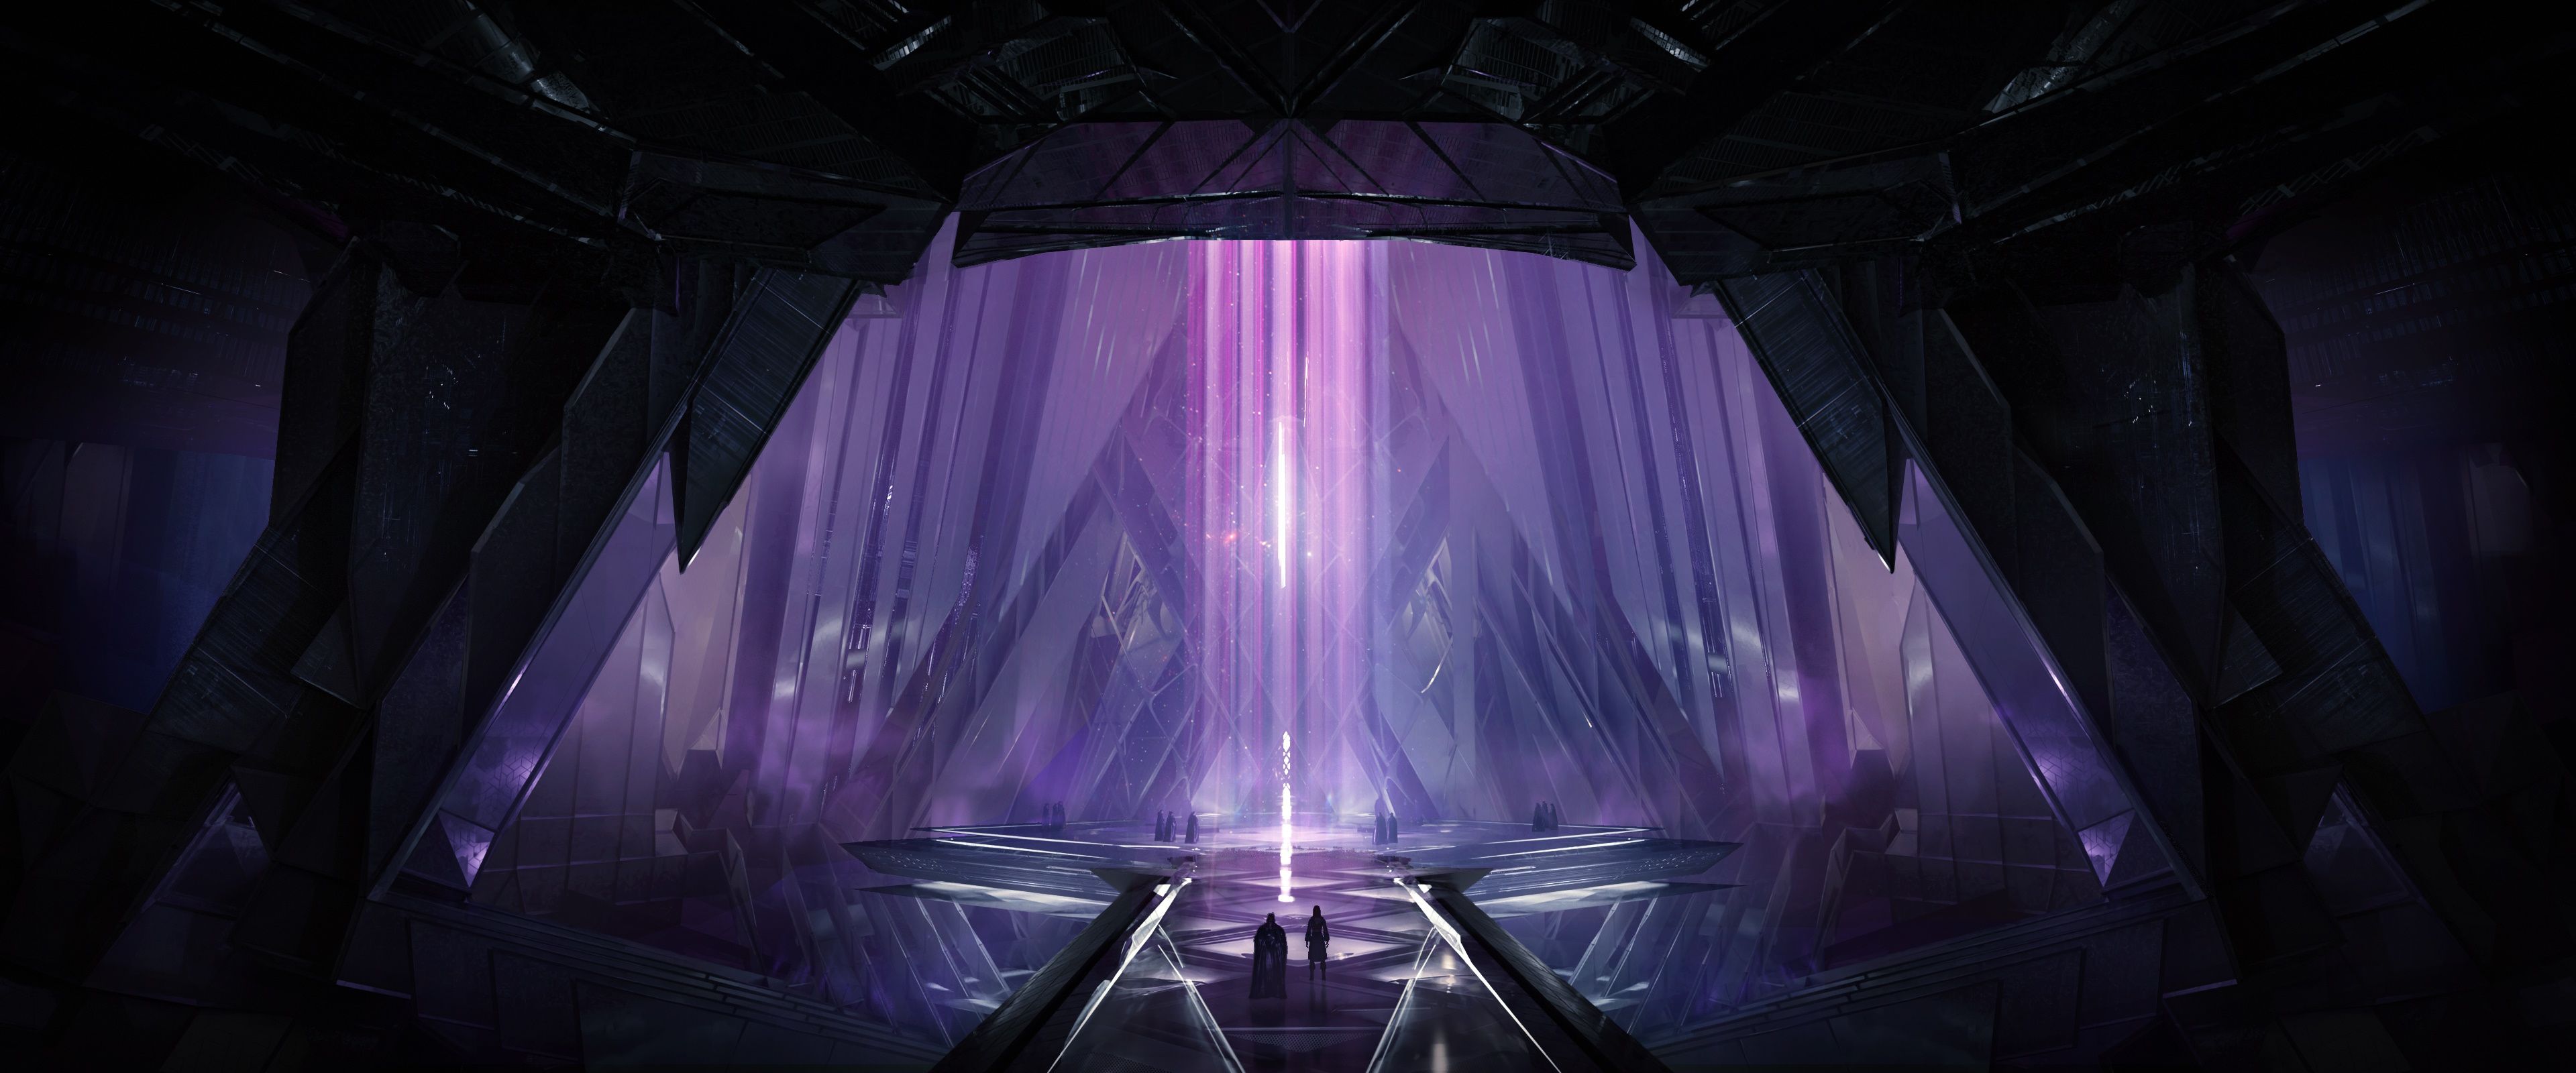 两个非常小的人影走过一个巨大的紫色晶体结构，该结构延伸到他们上方很远的地方。